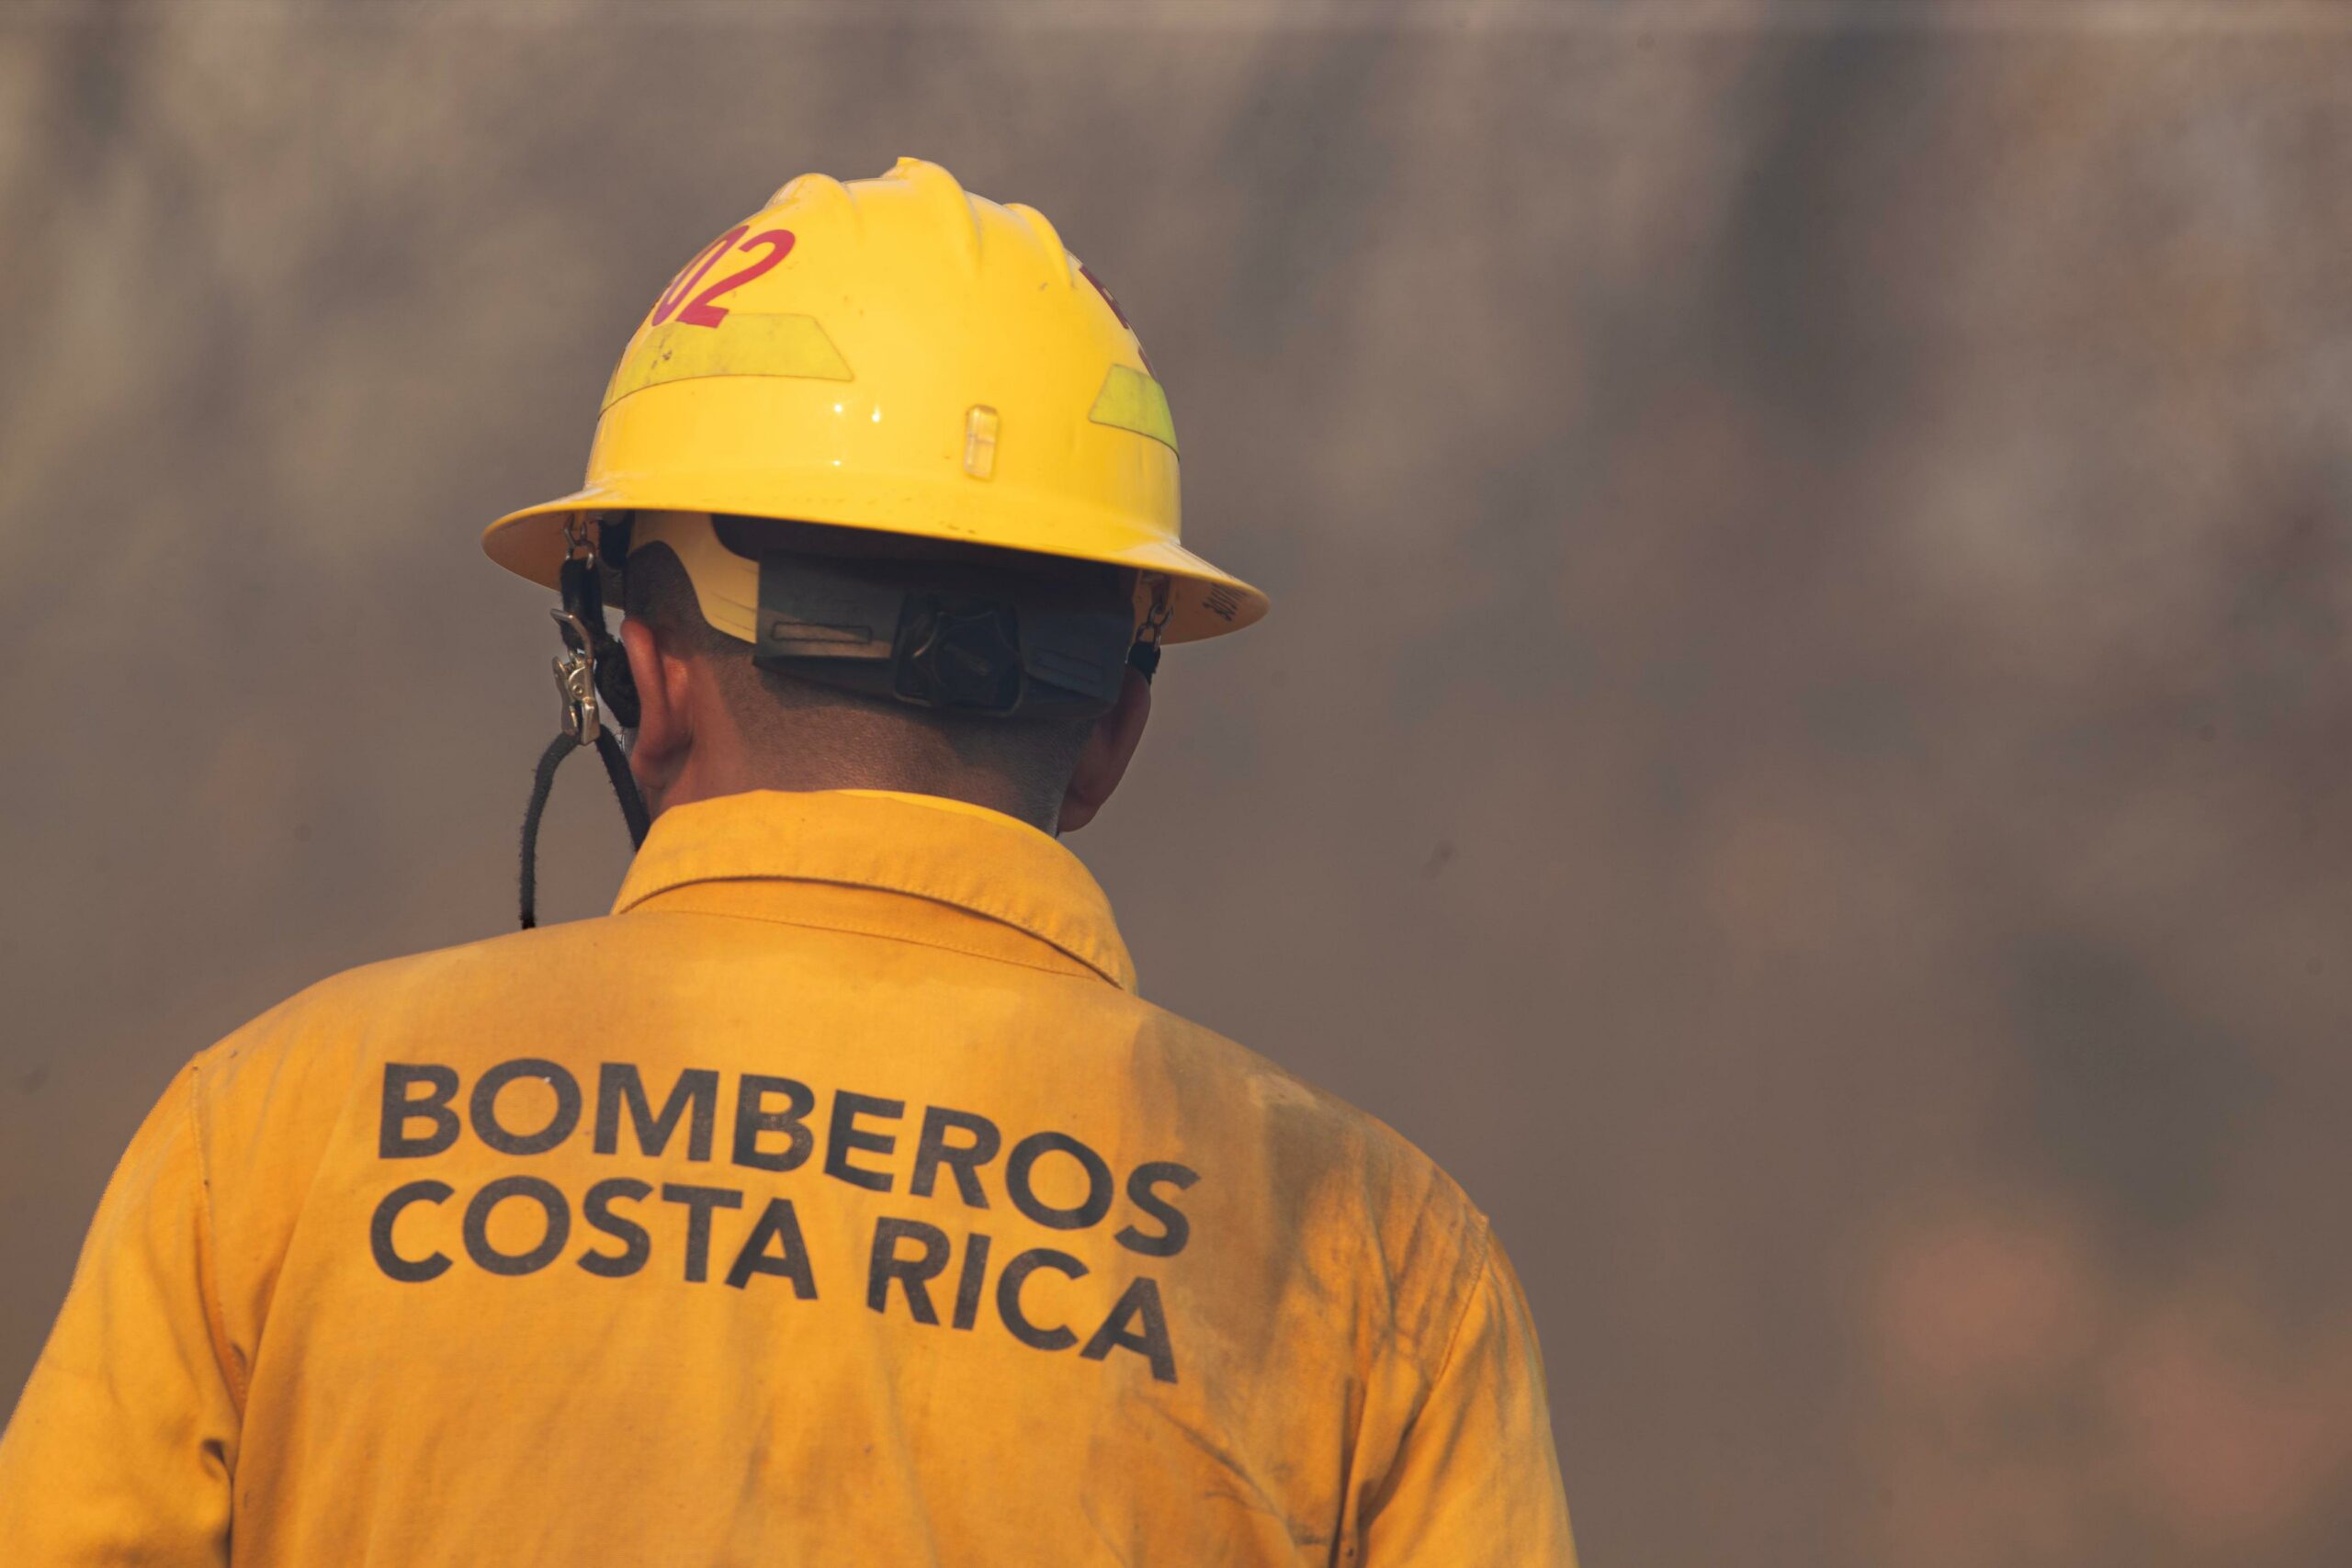 Bomberos contabiliza 10 incendios forestales en lo que va del año tras emergencias reportada en Esparza y Playas del Coco este fin de semana